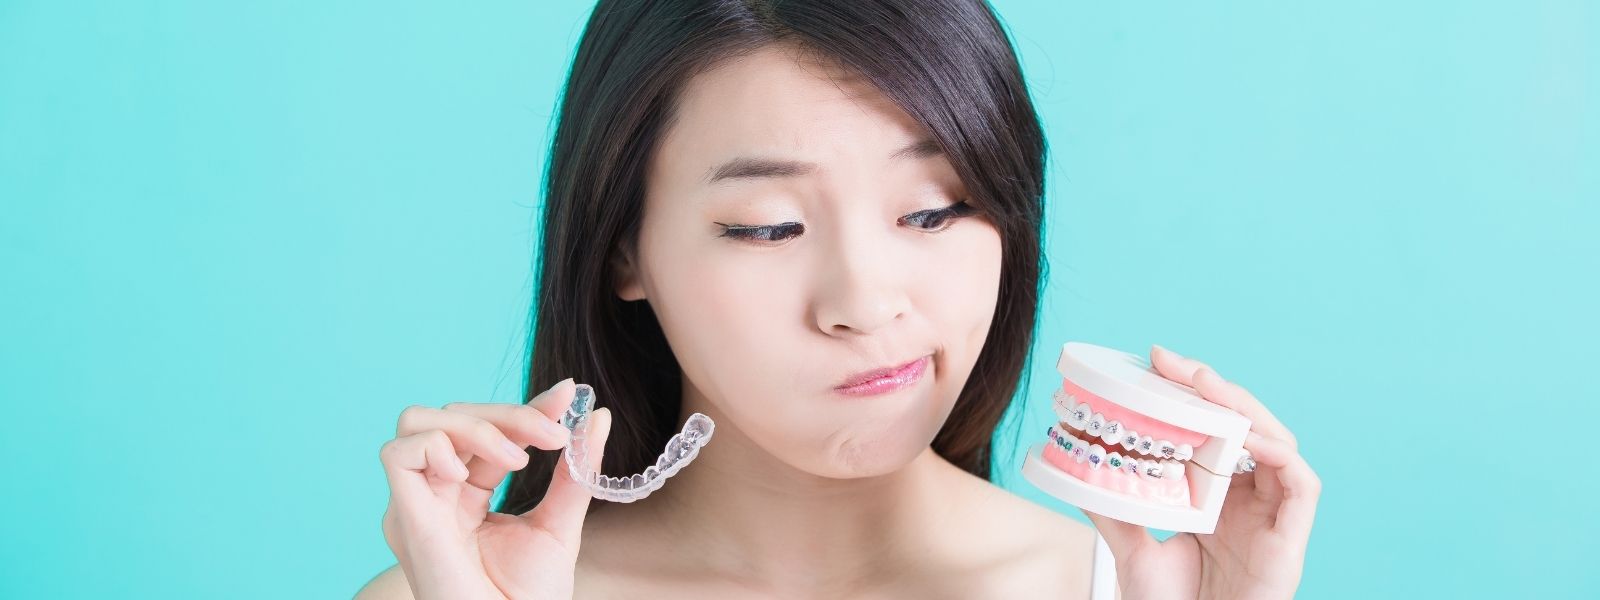 Asian girl confused between dental implants